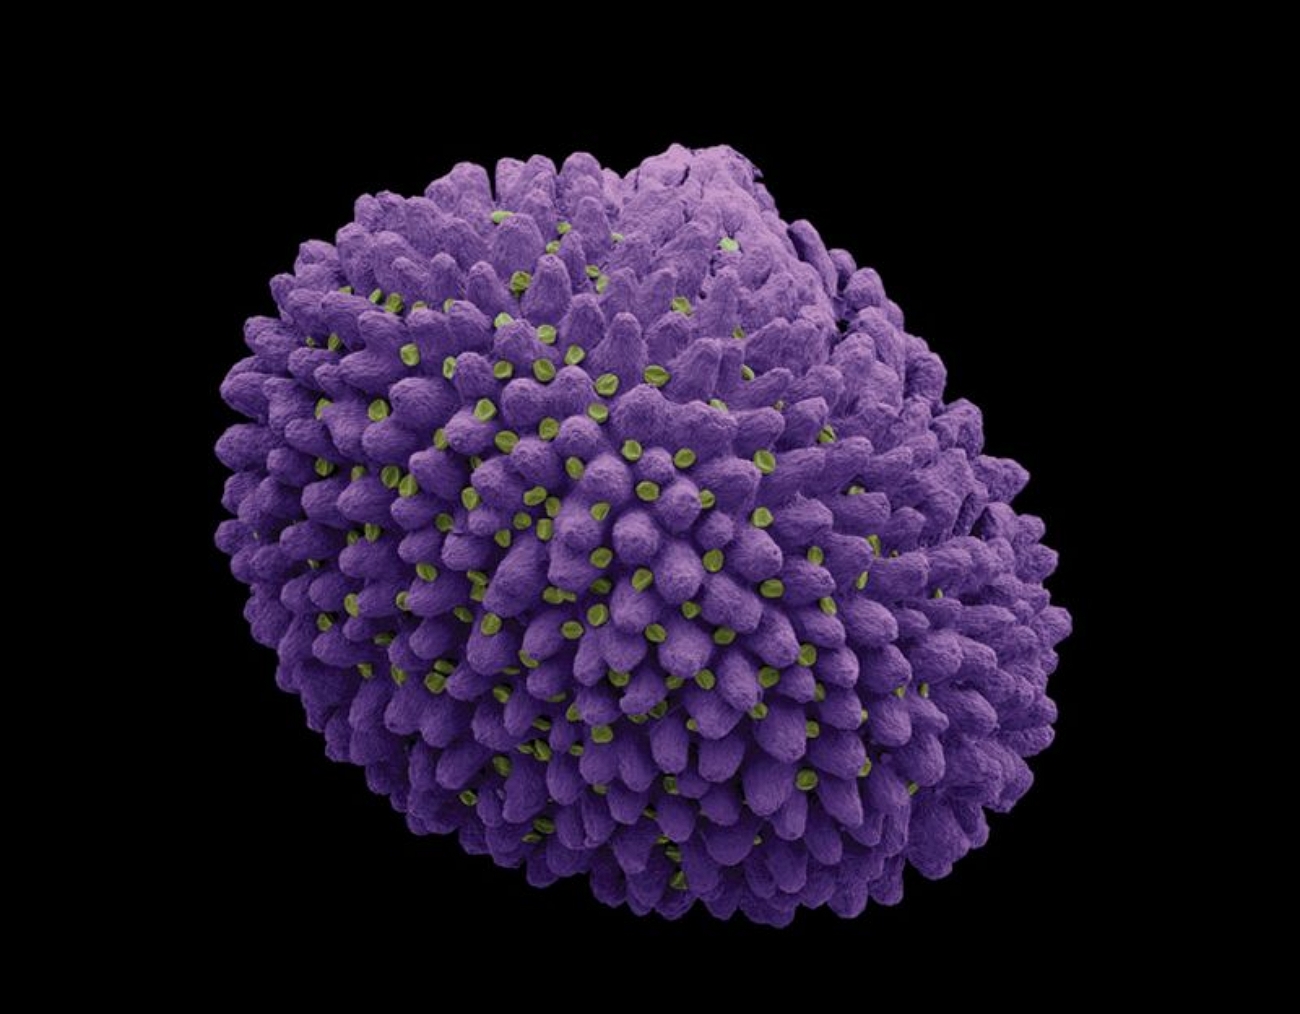 Фотография микро. Пыльца микрофотографии. Микрофотография пыльцы покрытосеменных. Пыльца фацелии под микроскопом. Цветы под микроскопом.